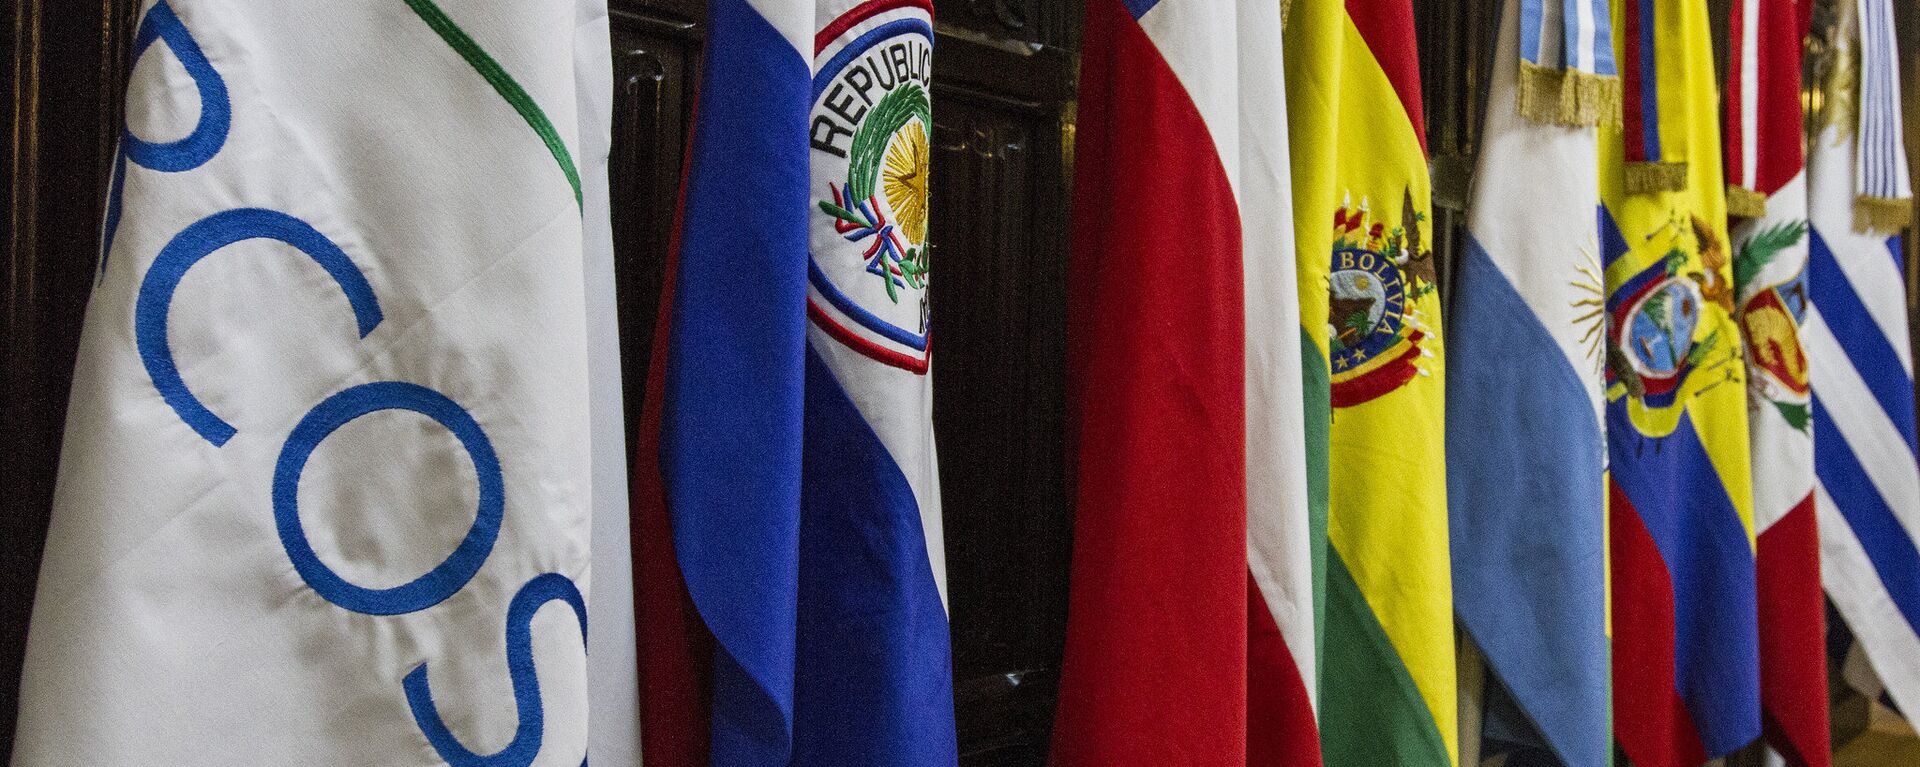 Banderas de los países miembros del Mercosur - Sputnik Mundo, 1920, 26.03.2021